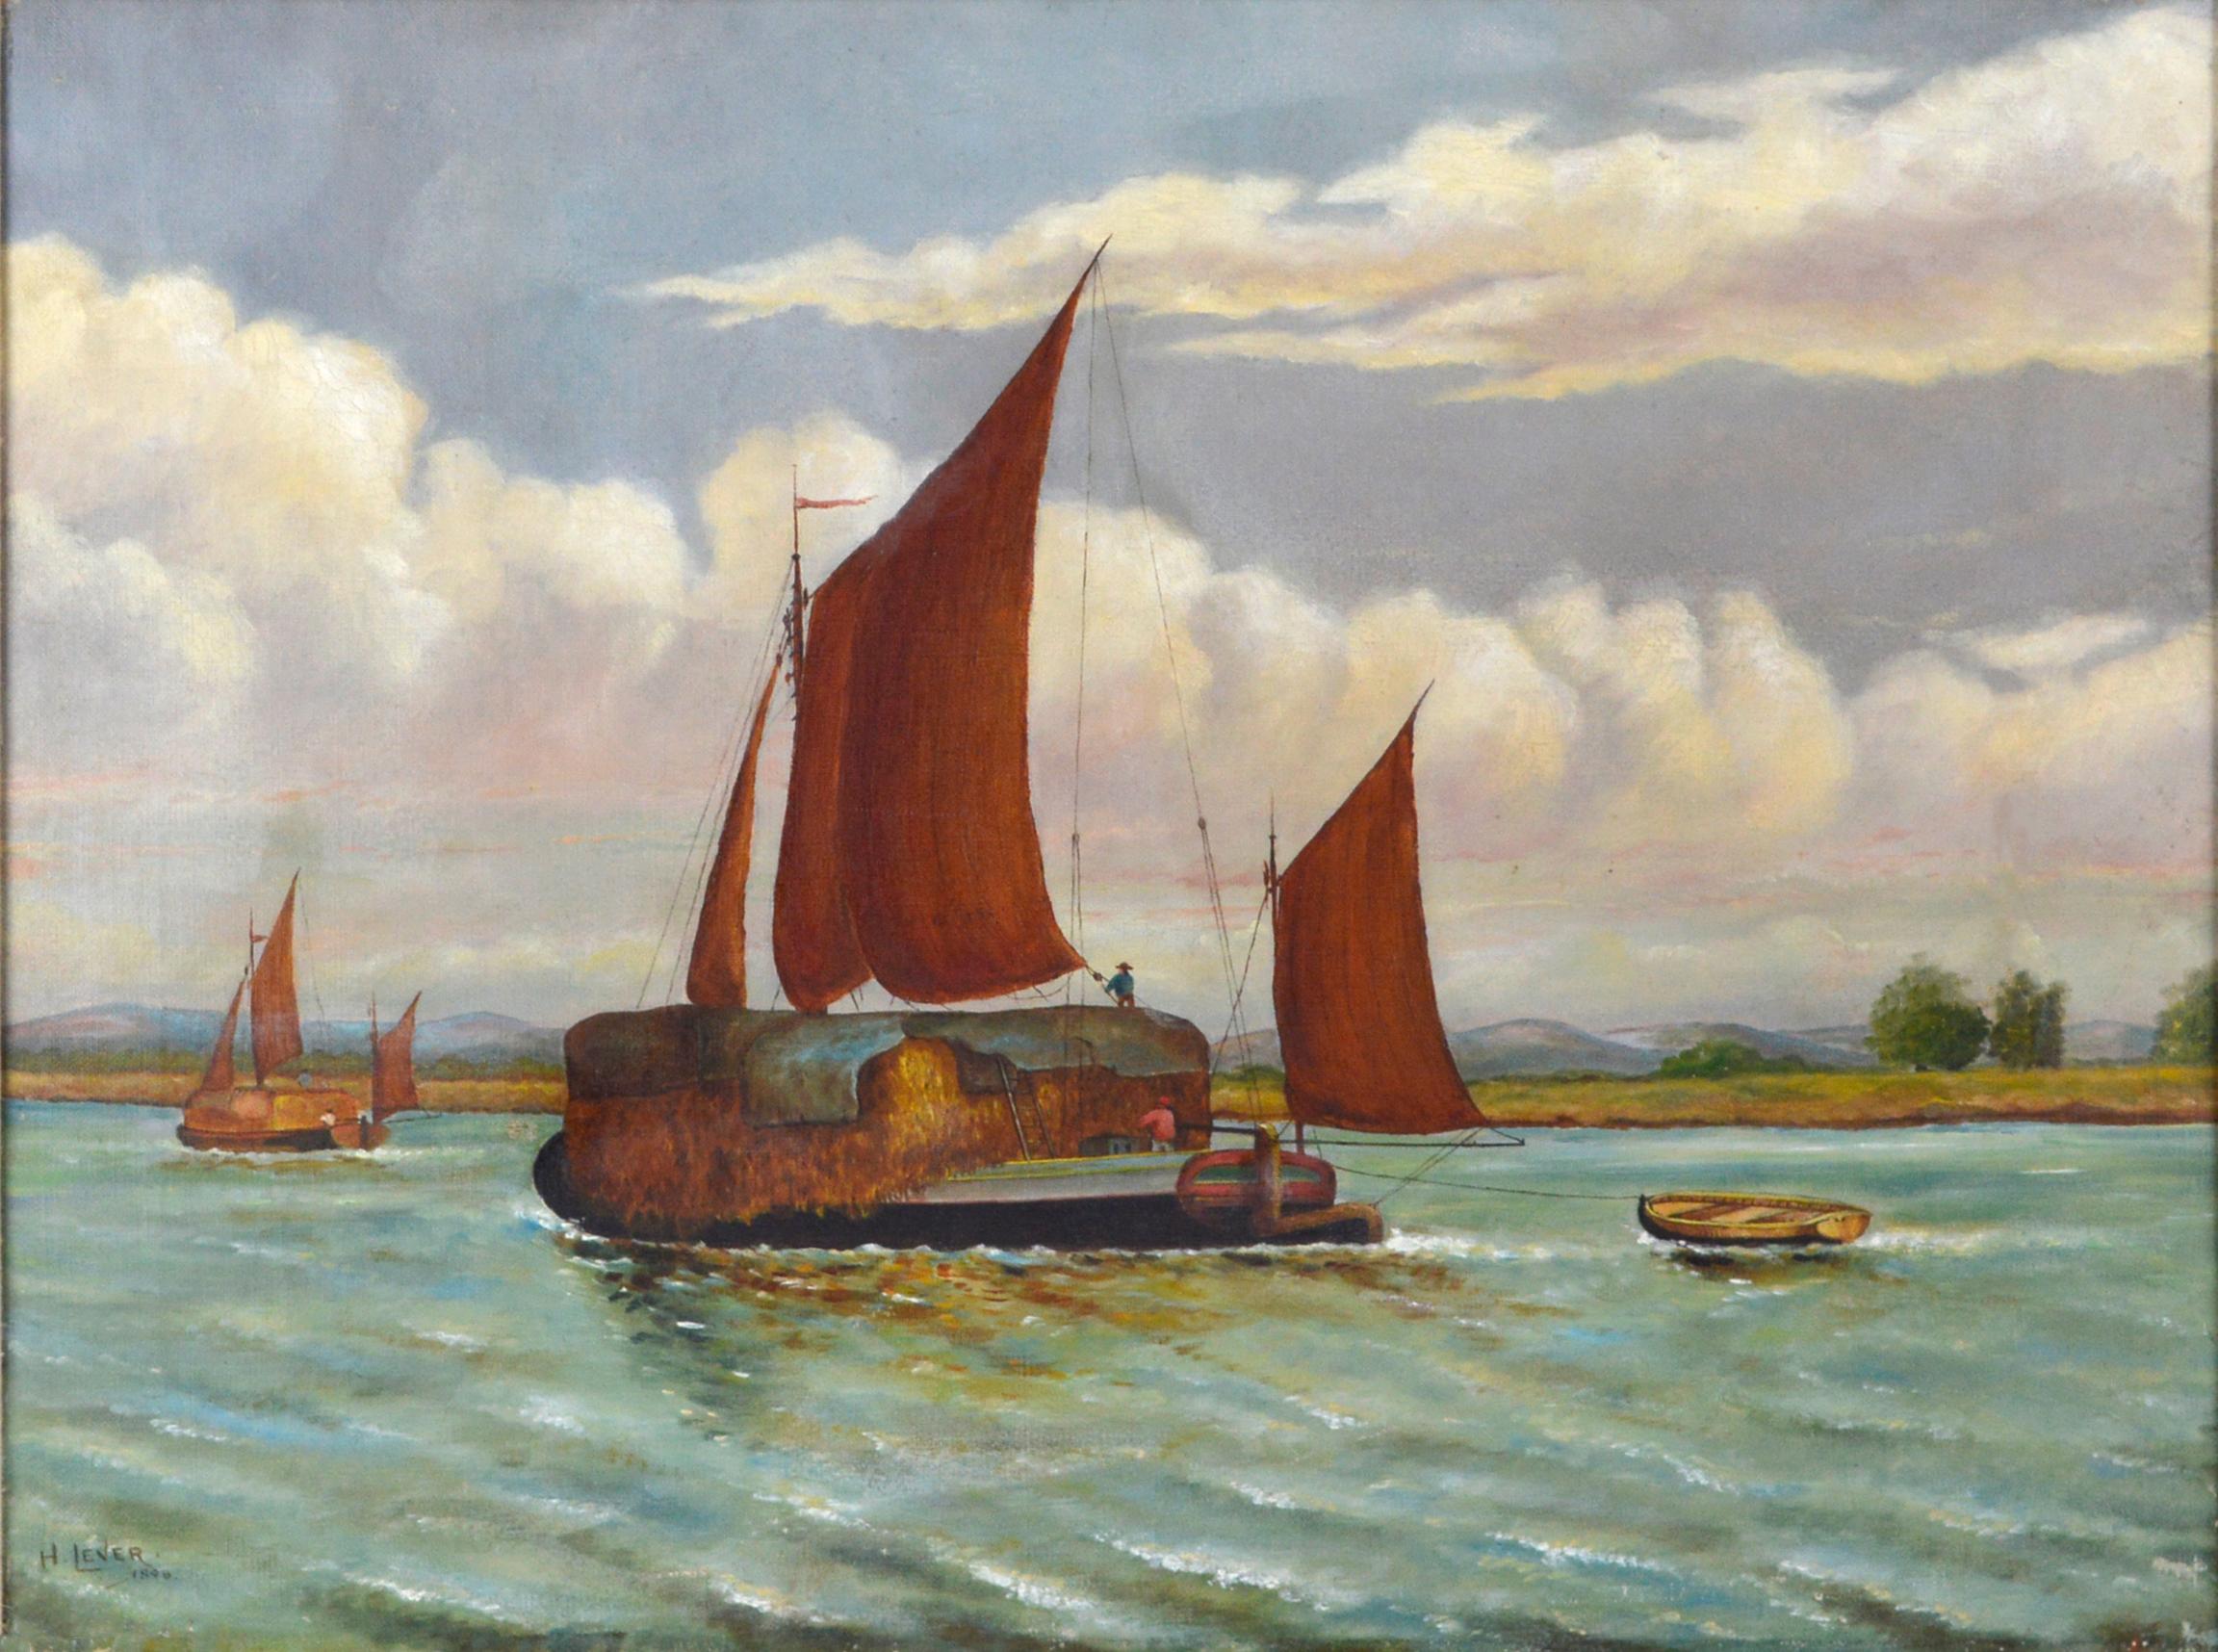 Edward Duncan, Öl auf Leinen, 1898, „Straw Barge“ an der Thames (nach) – Painting von Richard Hayley Lever